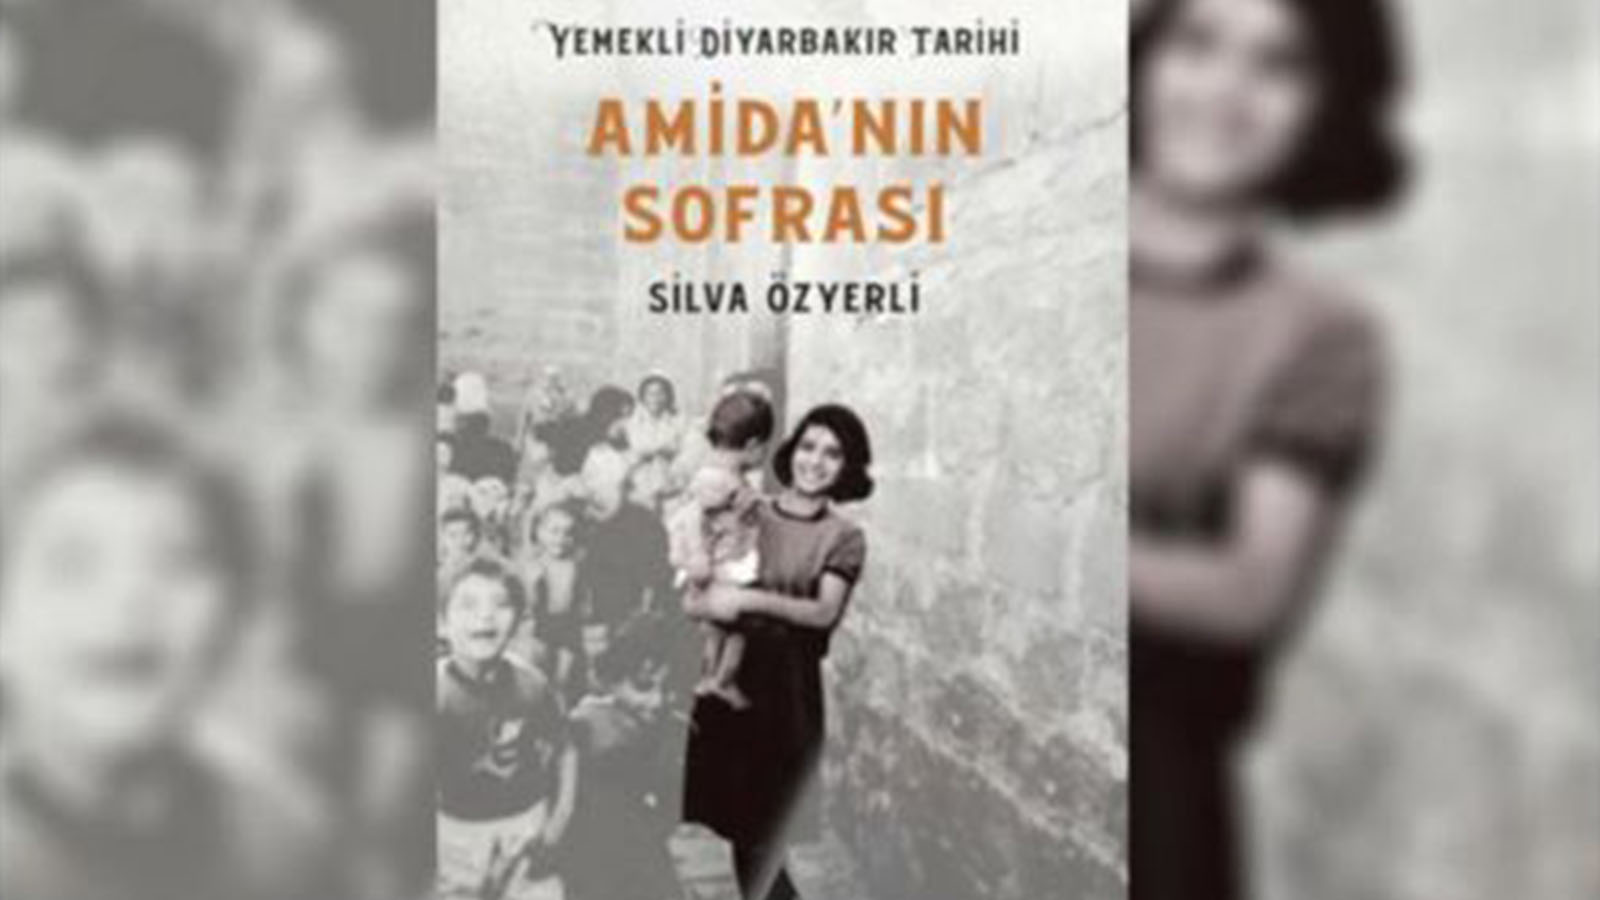 Amida'nın Sofrası'nın yazarı Silva Özyerli Esat Ayhan'a konuştu Diyarbakır'da evim